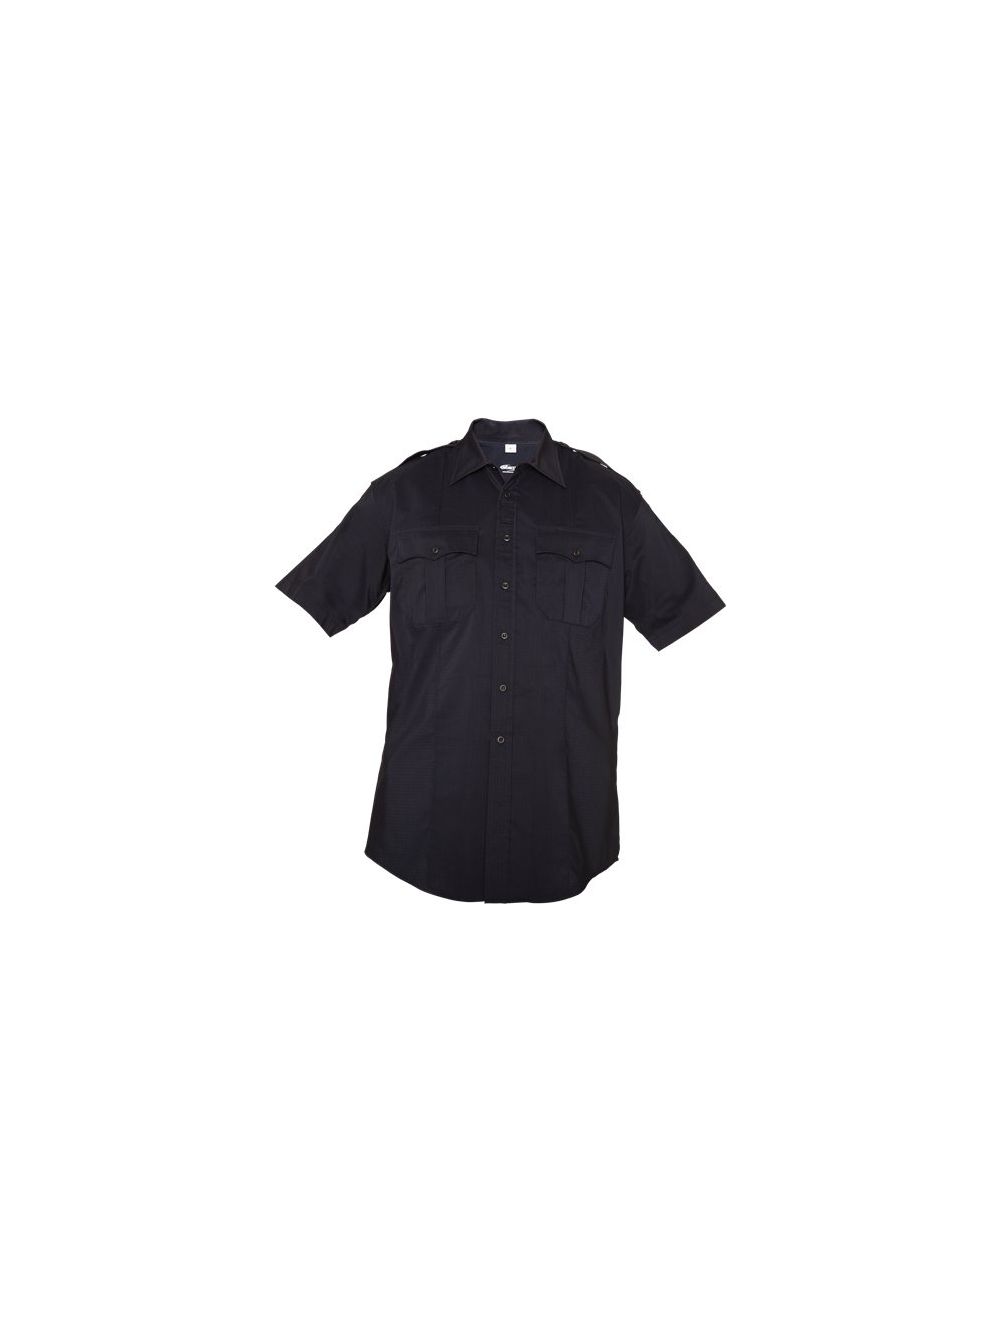 Reflex Shirt - Short Sleeve